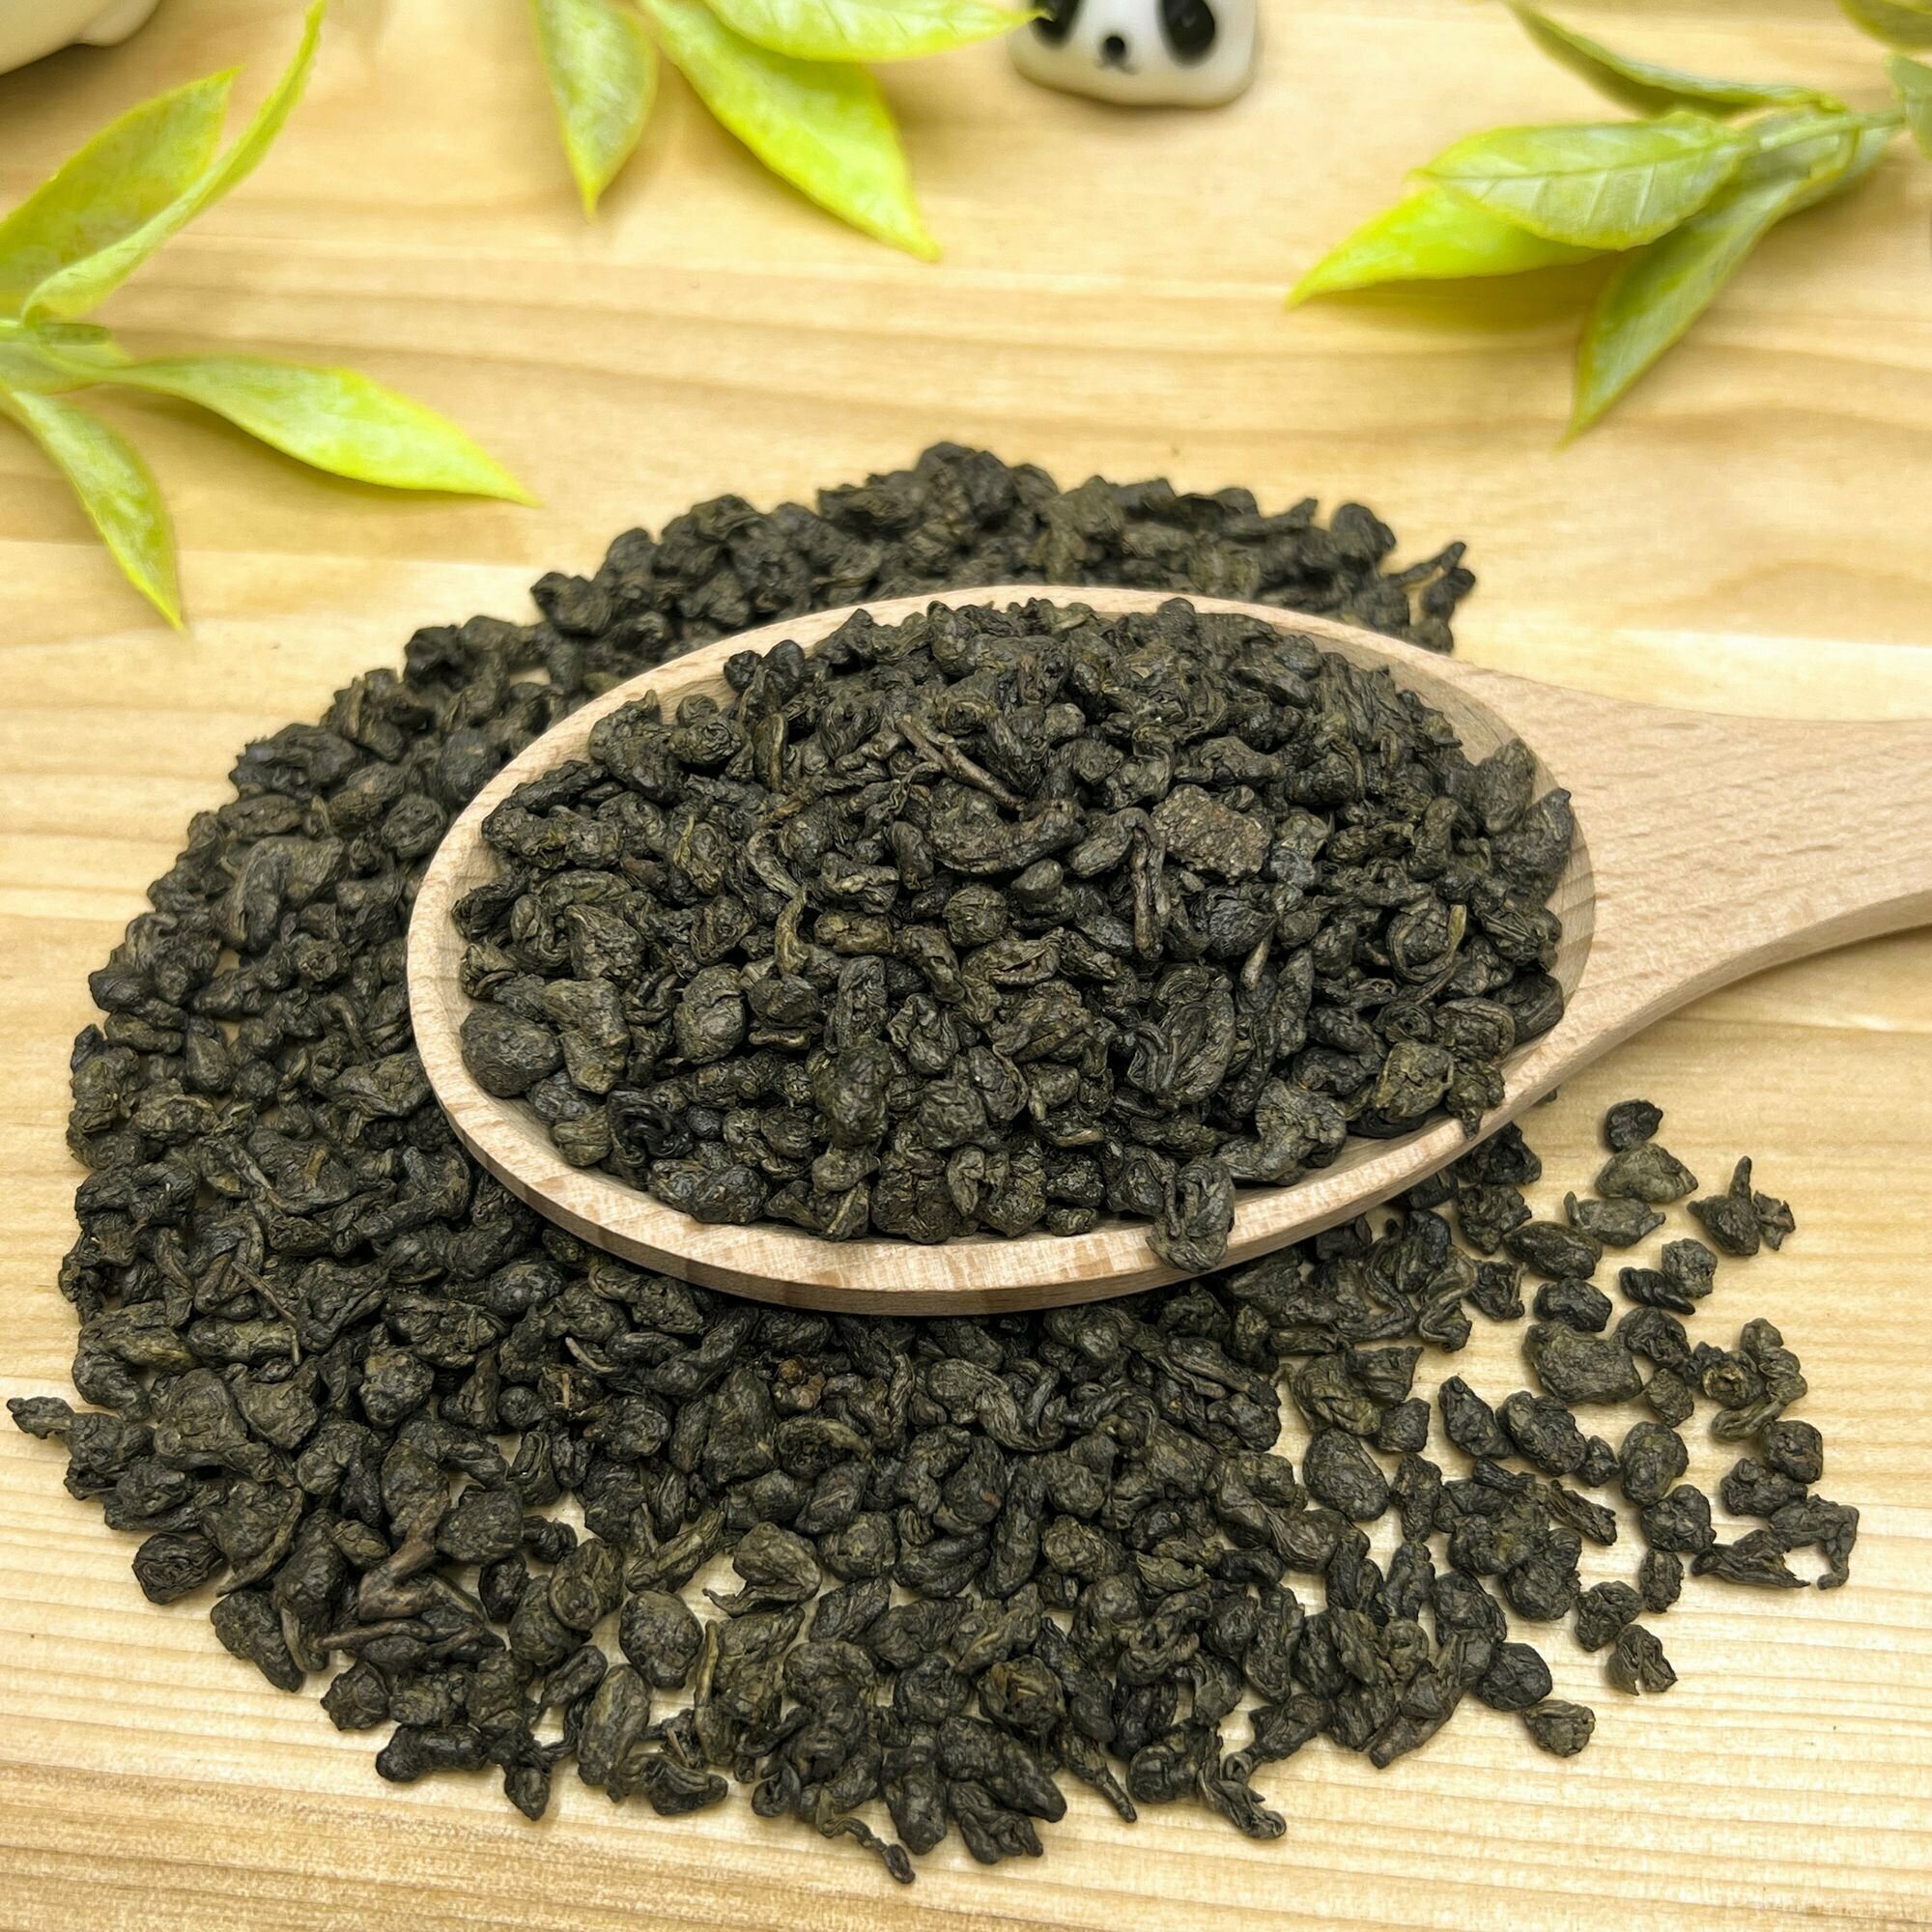 Китайский зеленый чай без добавок Ганпаудер 3505 Полезный чай / HEALTHY TEA, 250 г